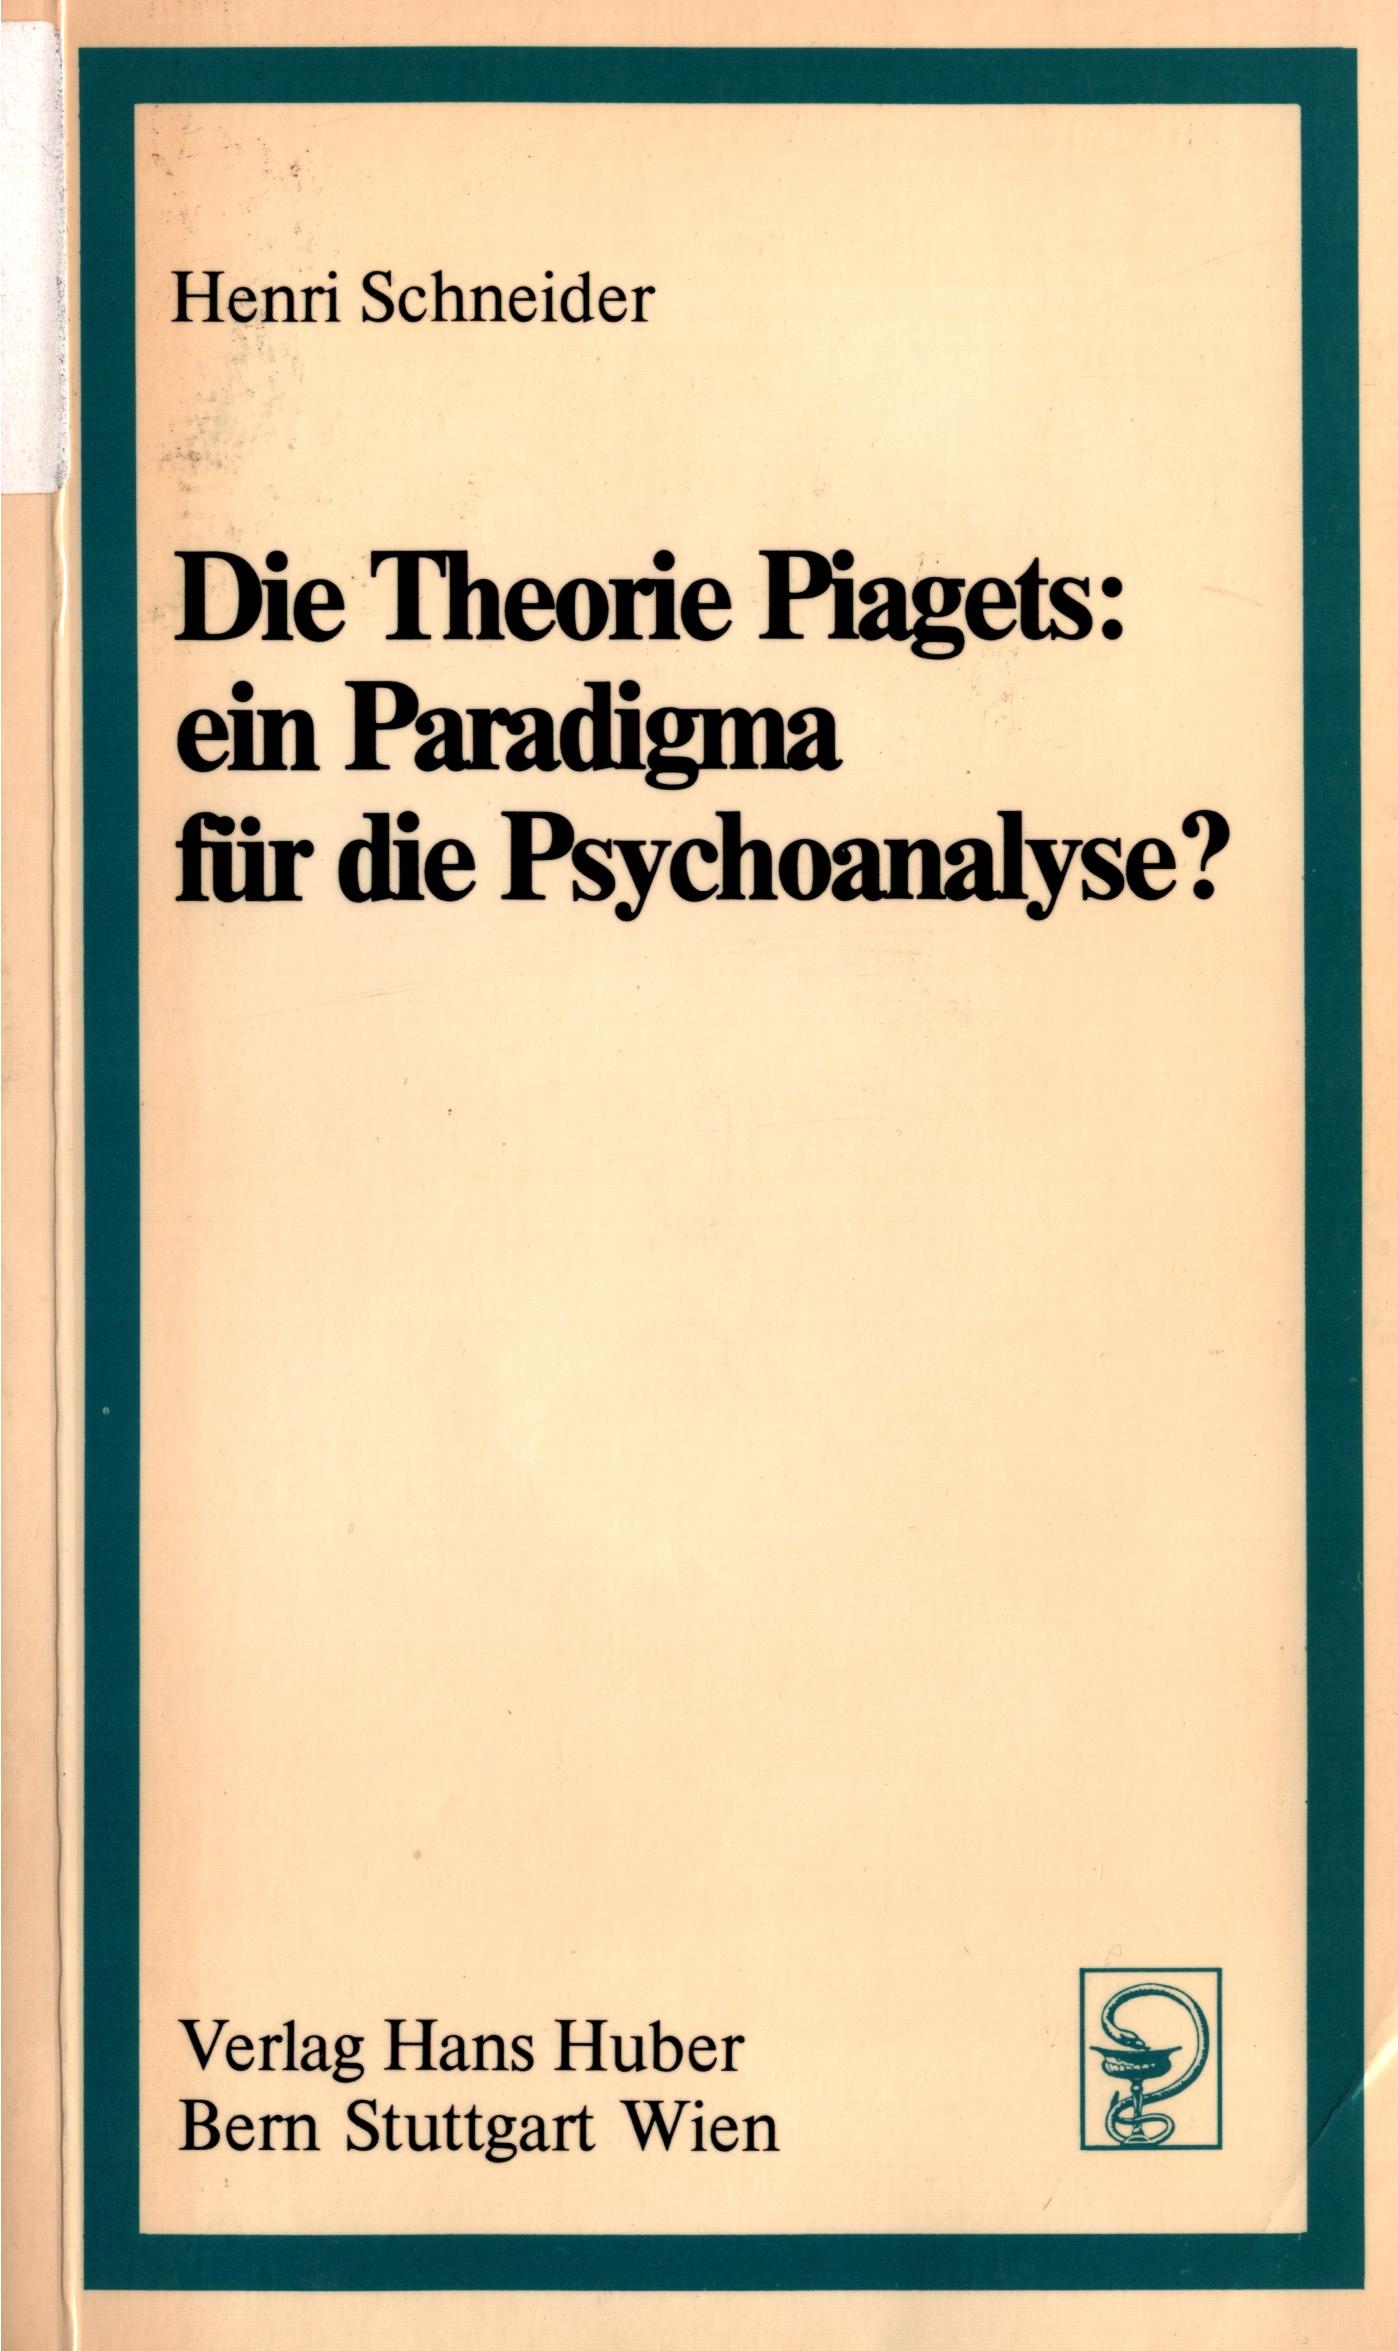 Die Theorie Piagets: ein Paradigma für die Psychoanalyse - Cover 